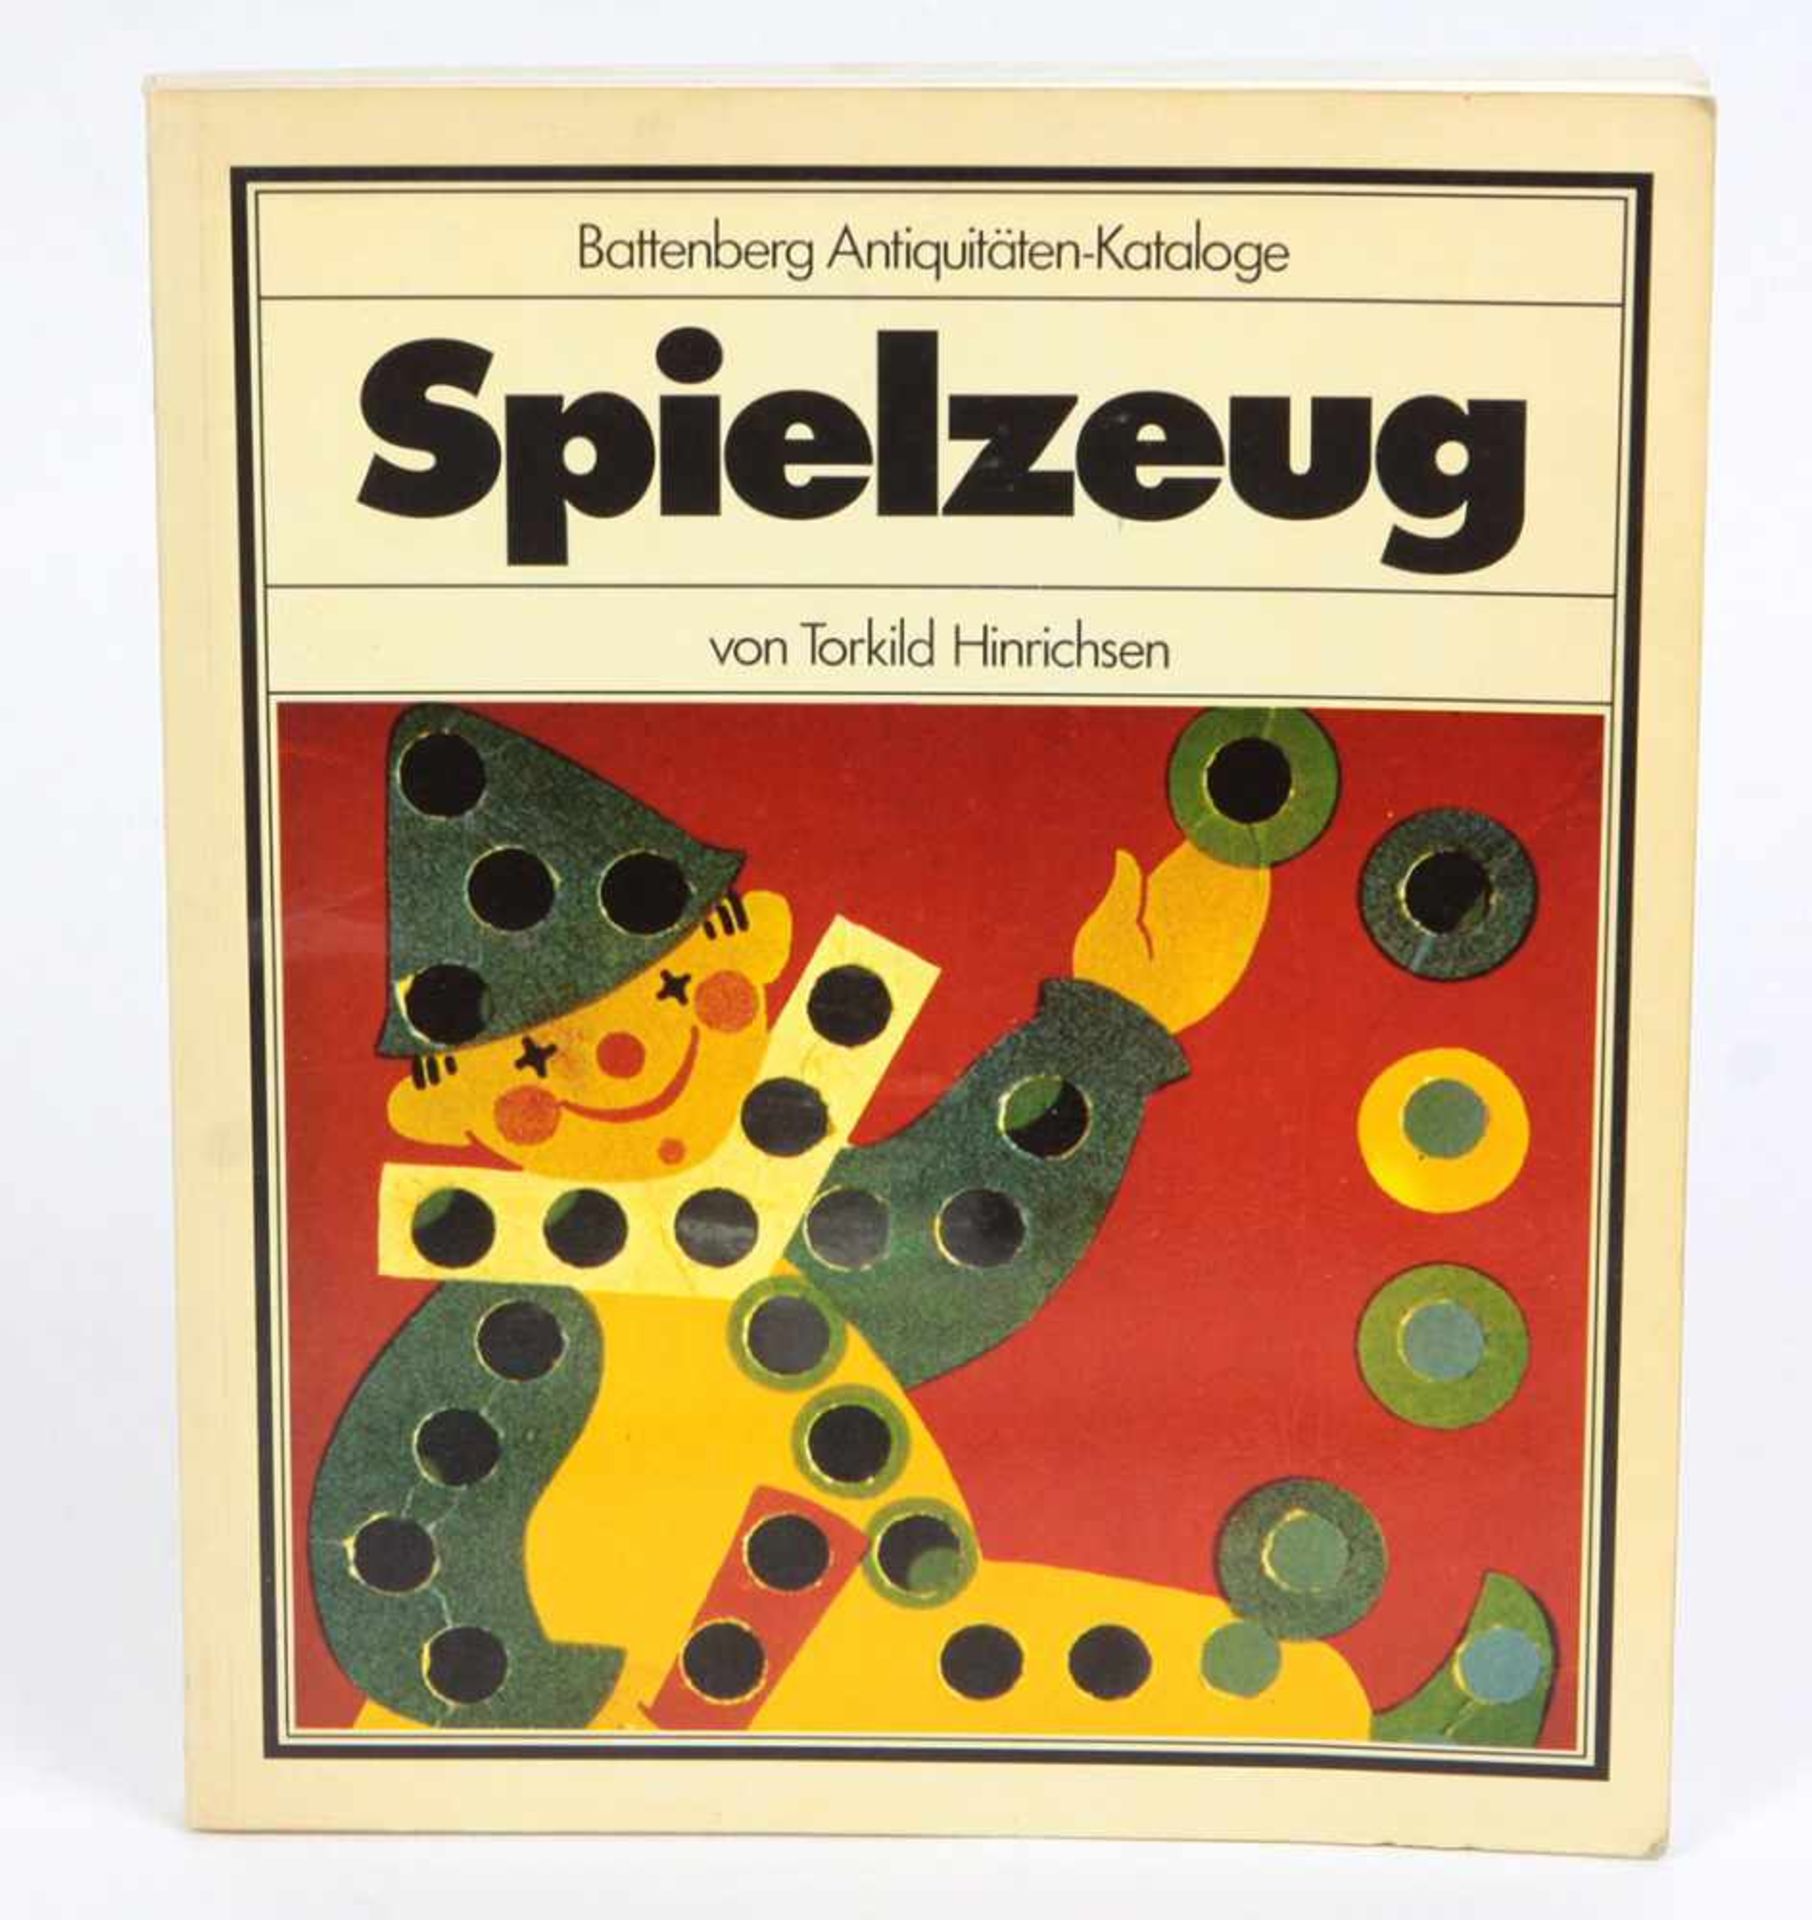 Antiquitäten KatalogHinrichsen, Torkild, Battenberg Antiquitäten-Kataloge, Spielzeug, 184 S. m.